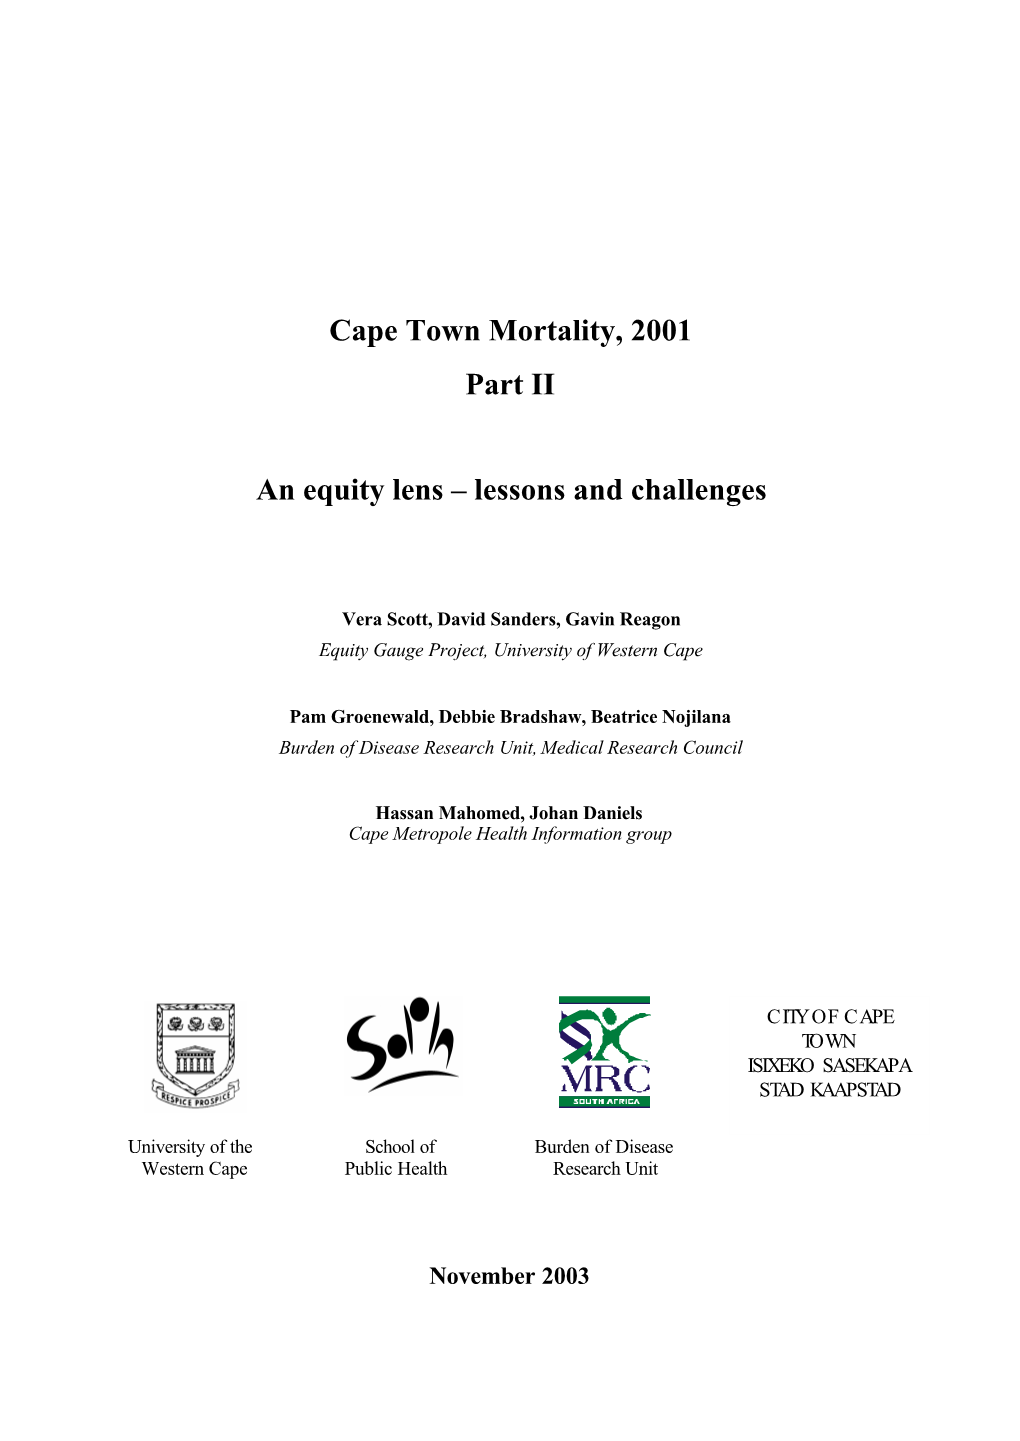 Cape Town Mortality, 2001 Part II Final, Nov 2003